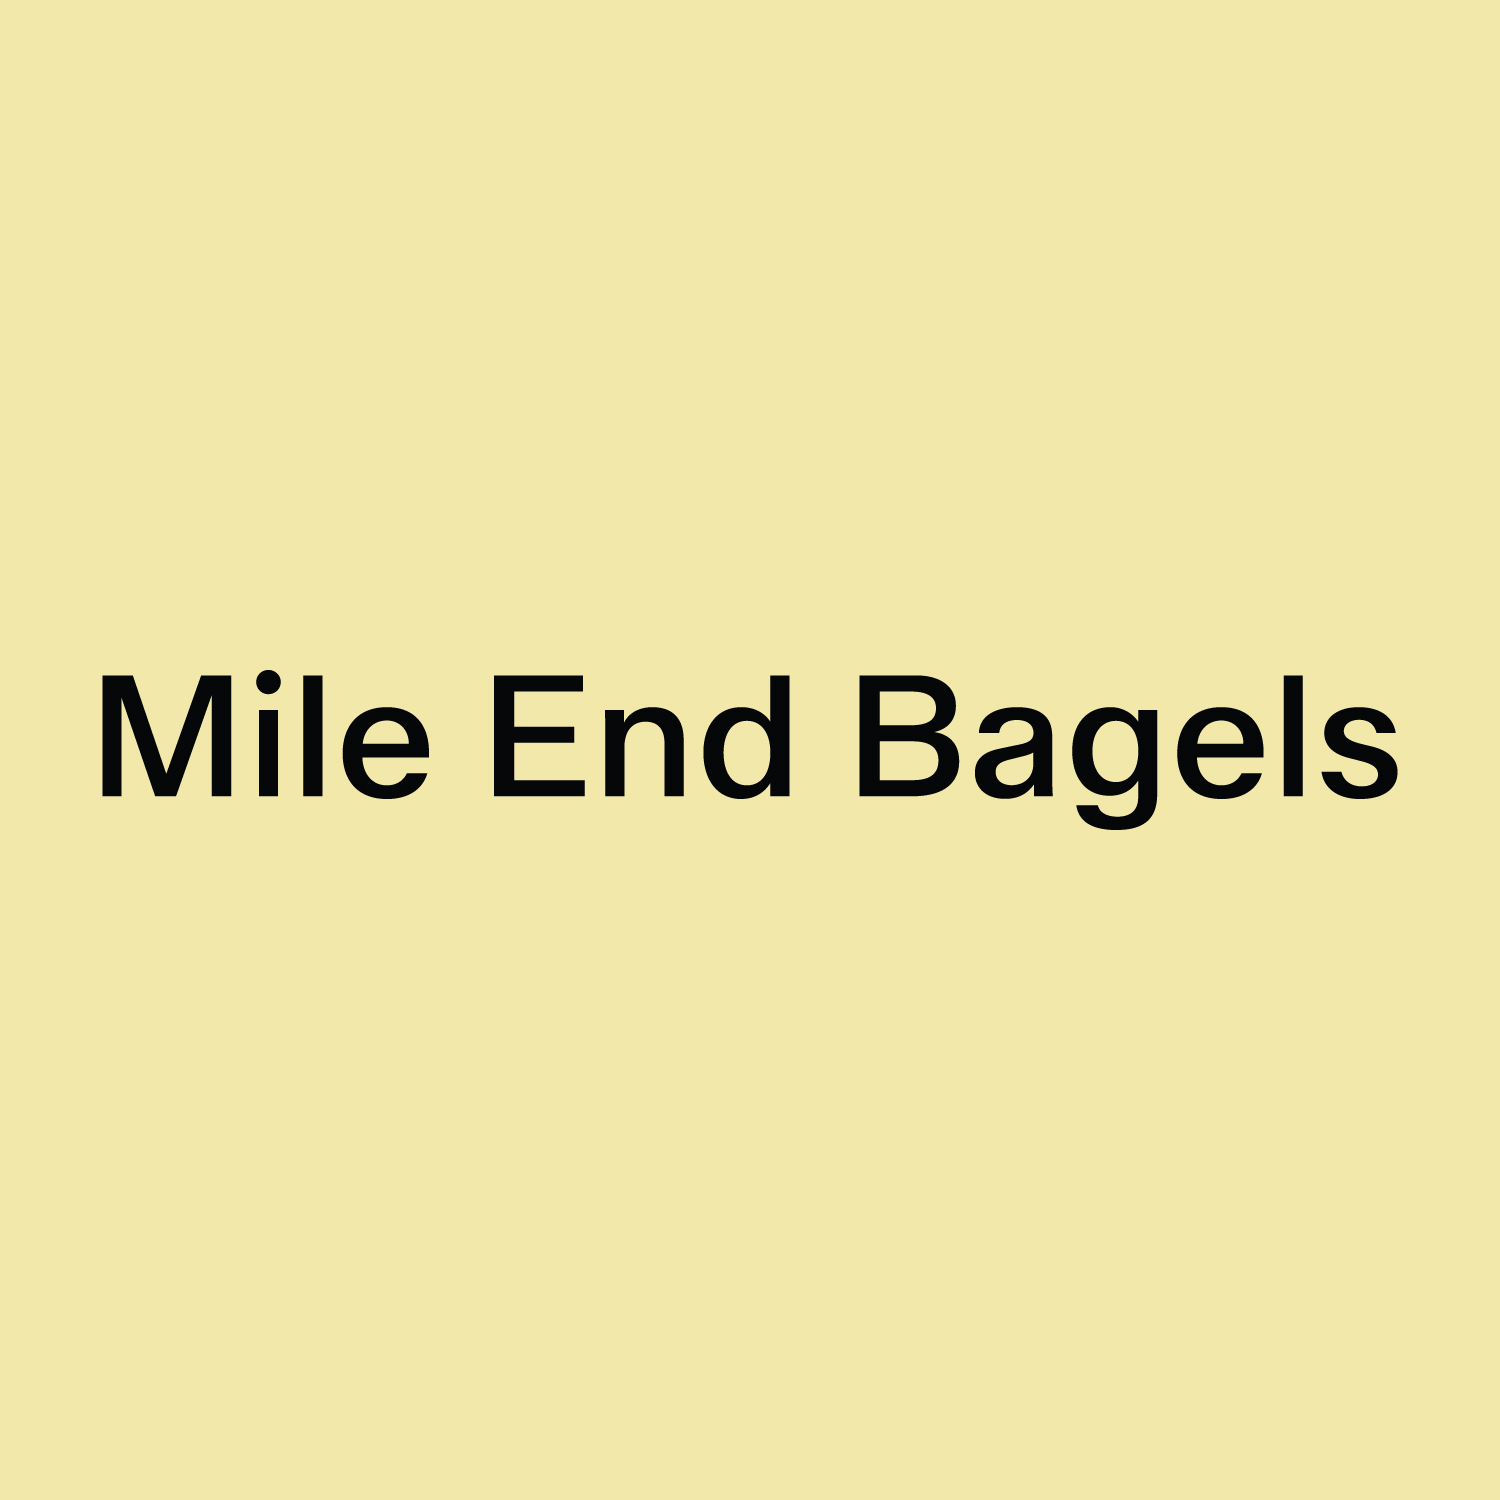 Mile End Bagels